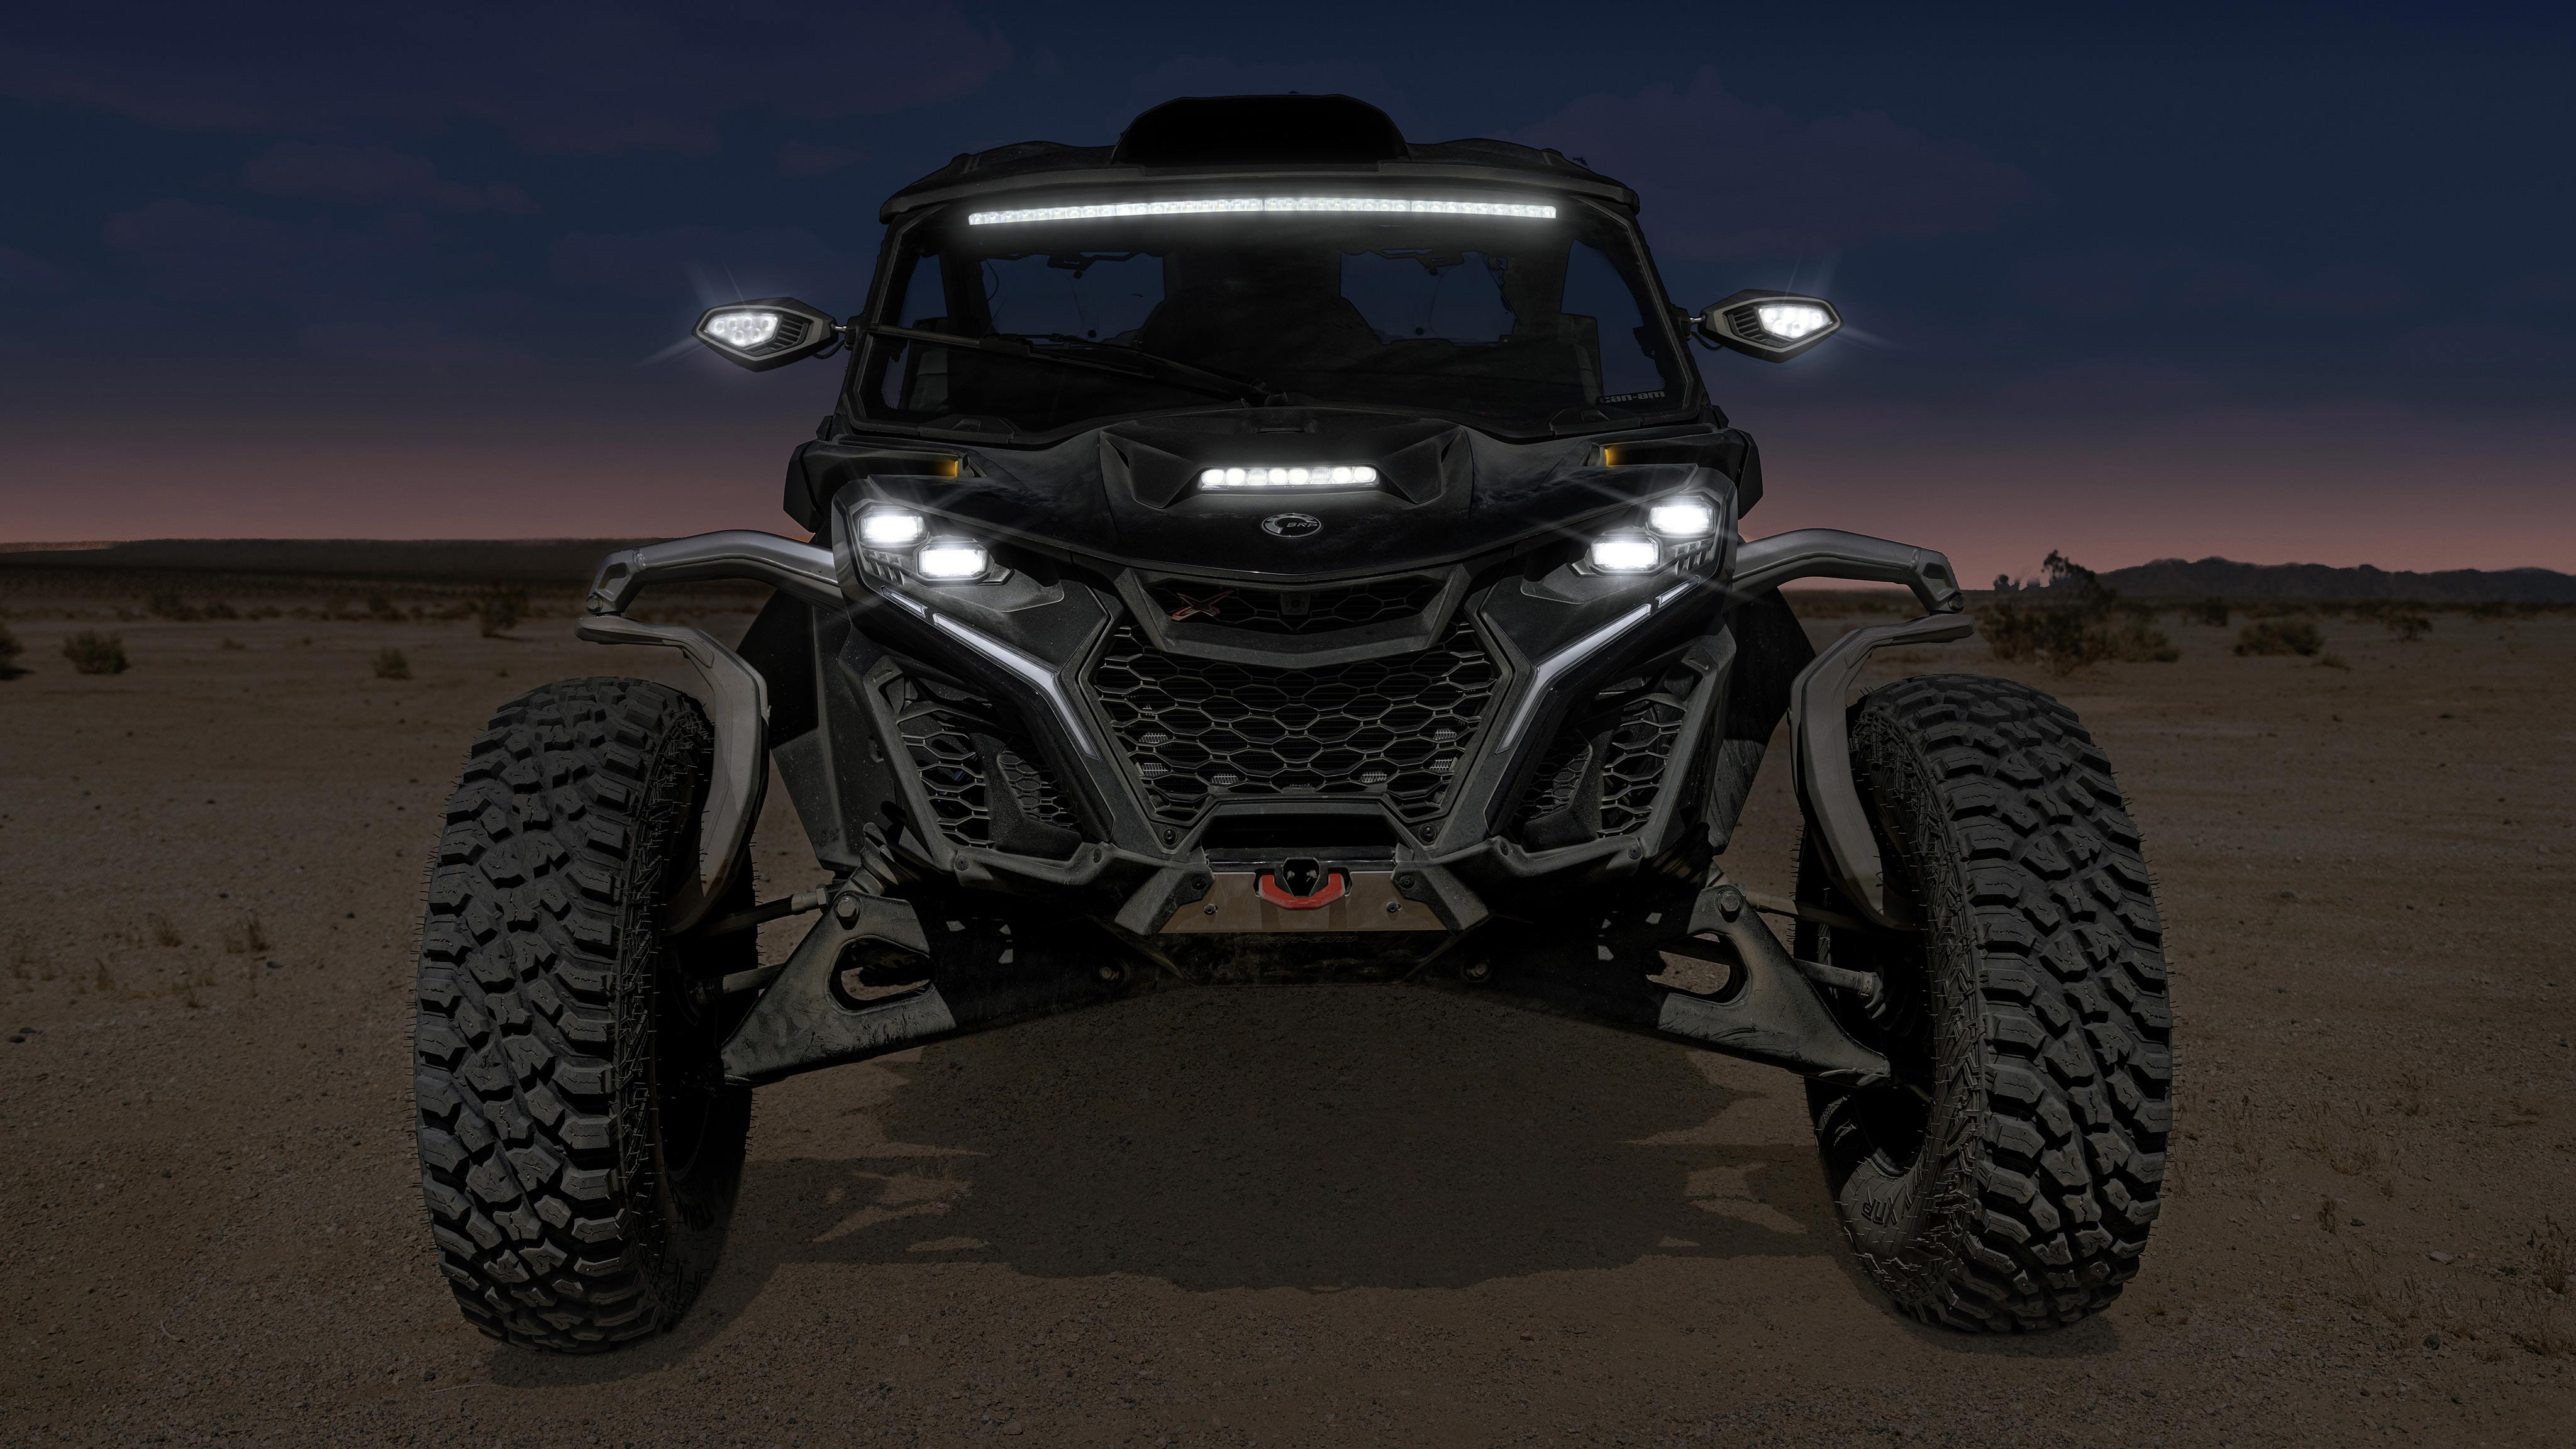 Neuer Maverick R in der Wüste bei Nacht